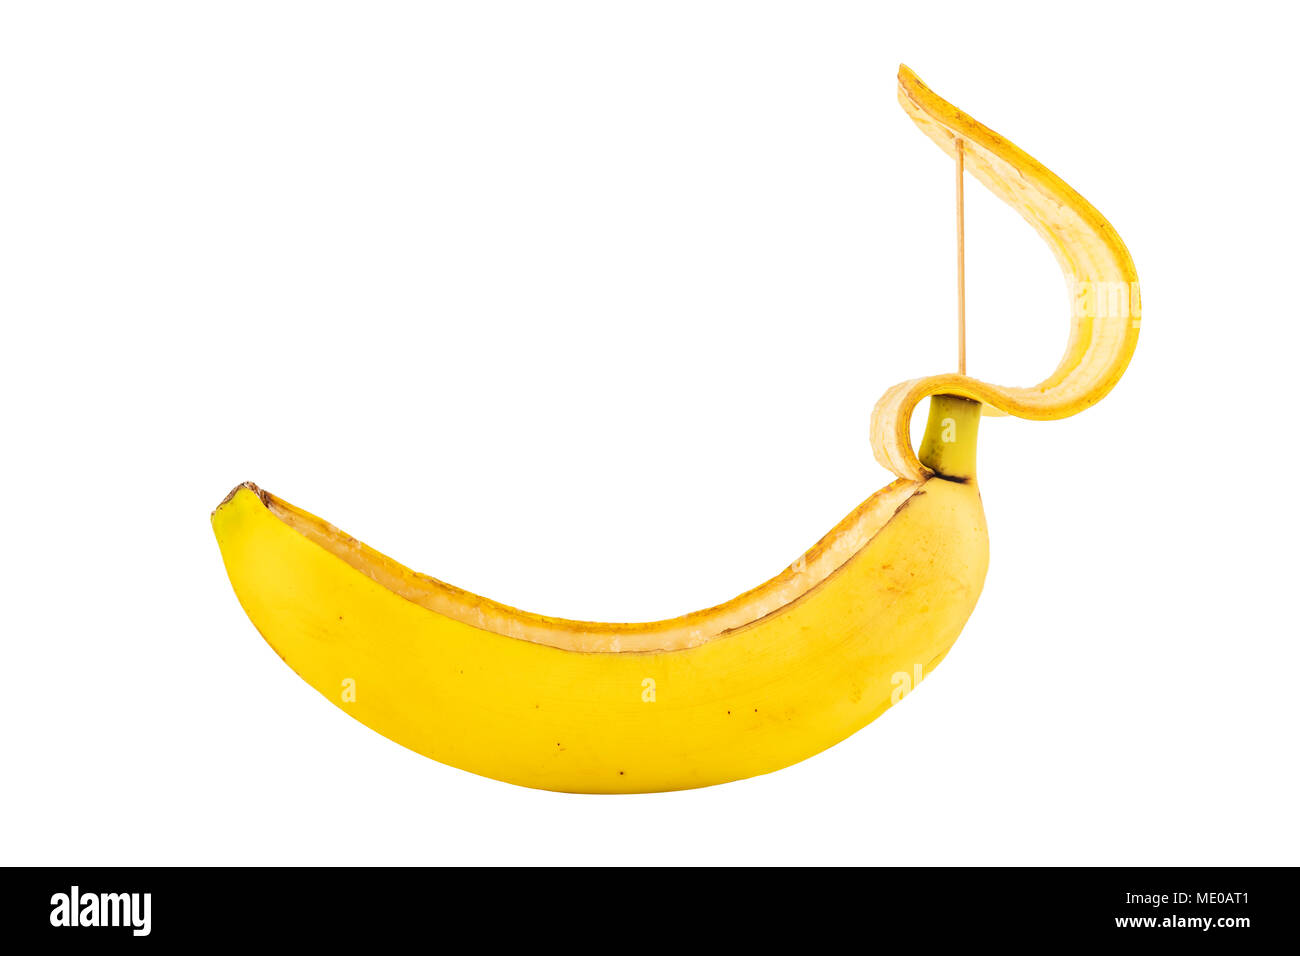 banana boat concept Stock Photo